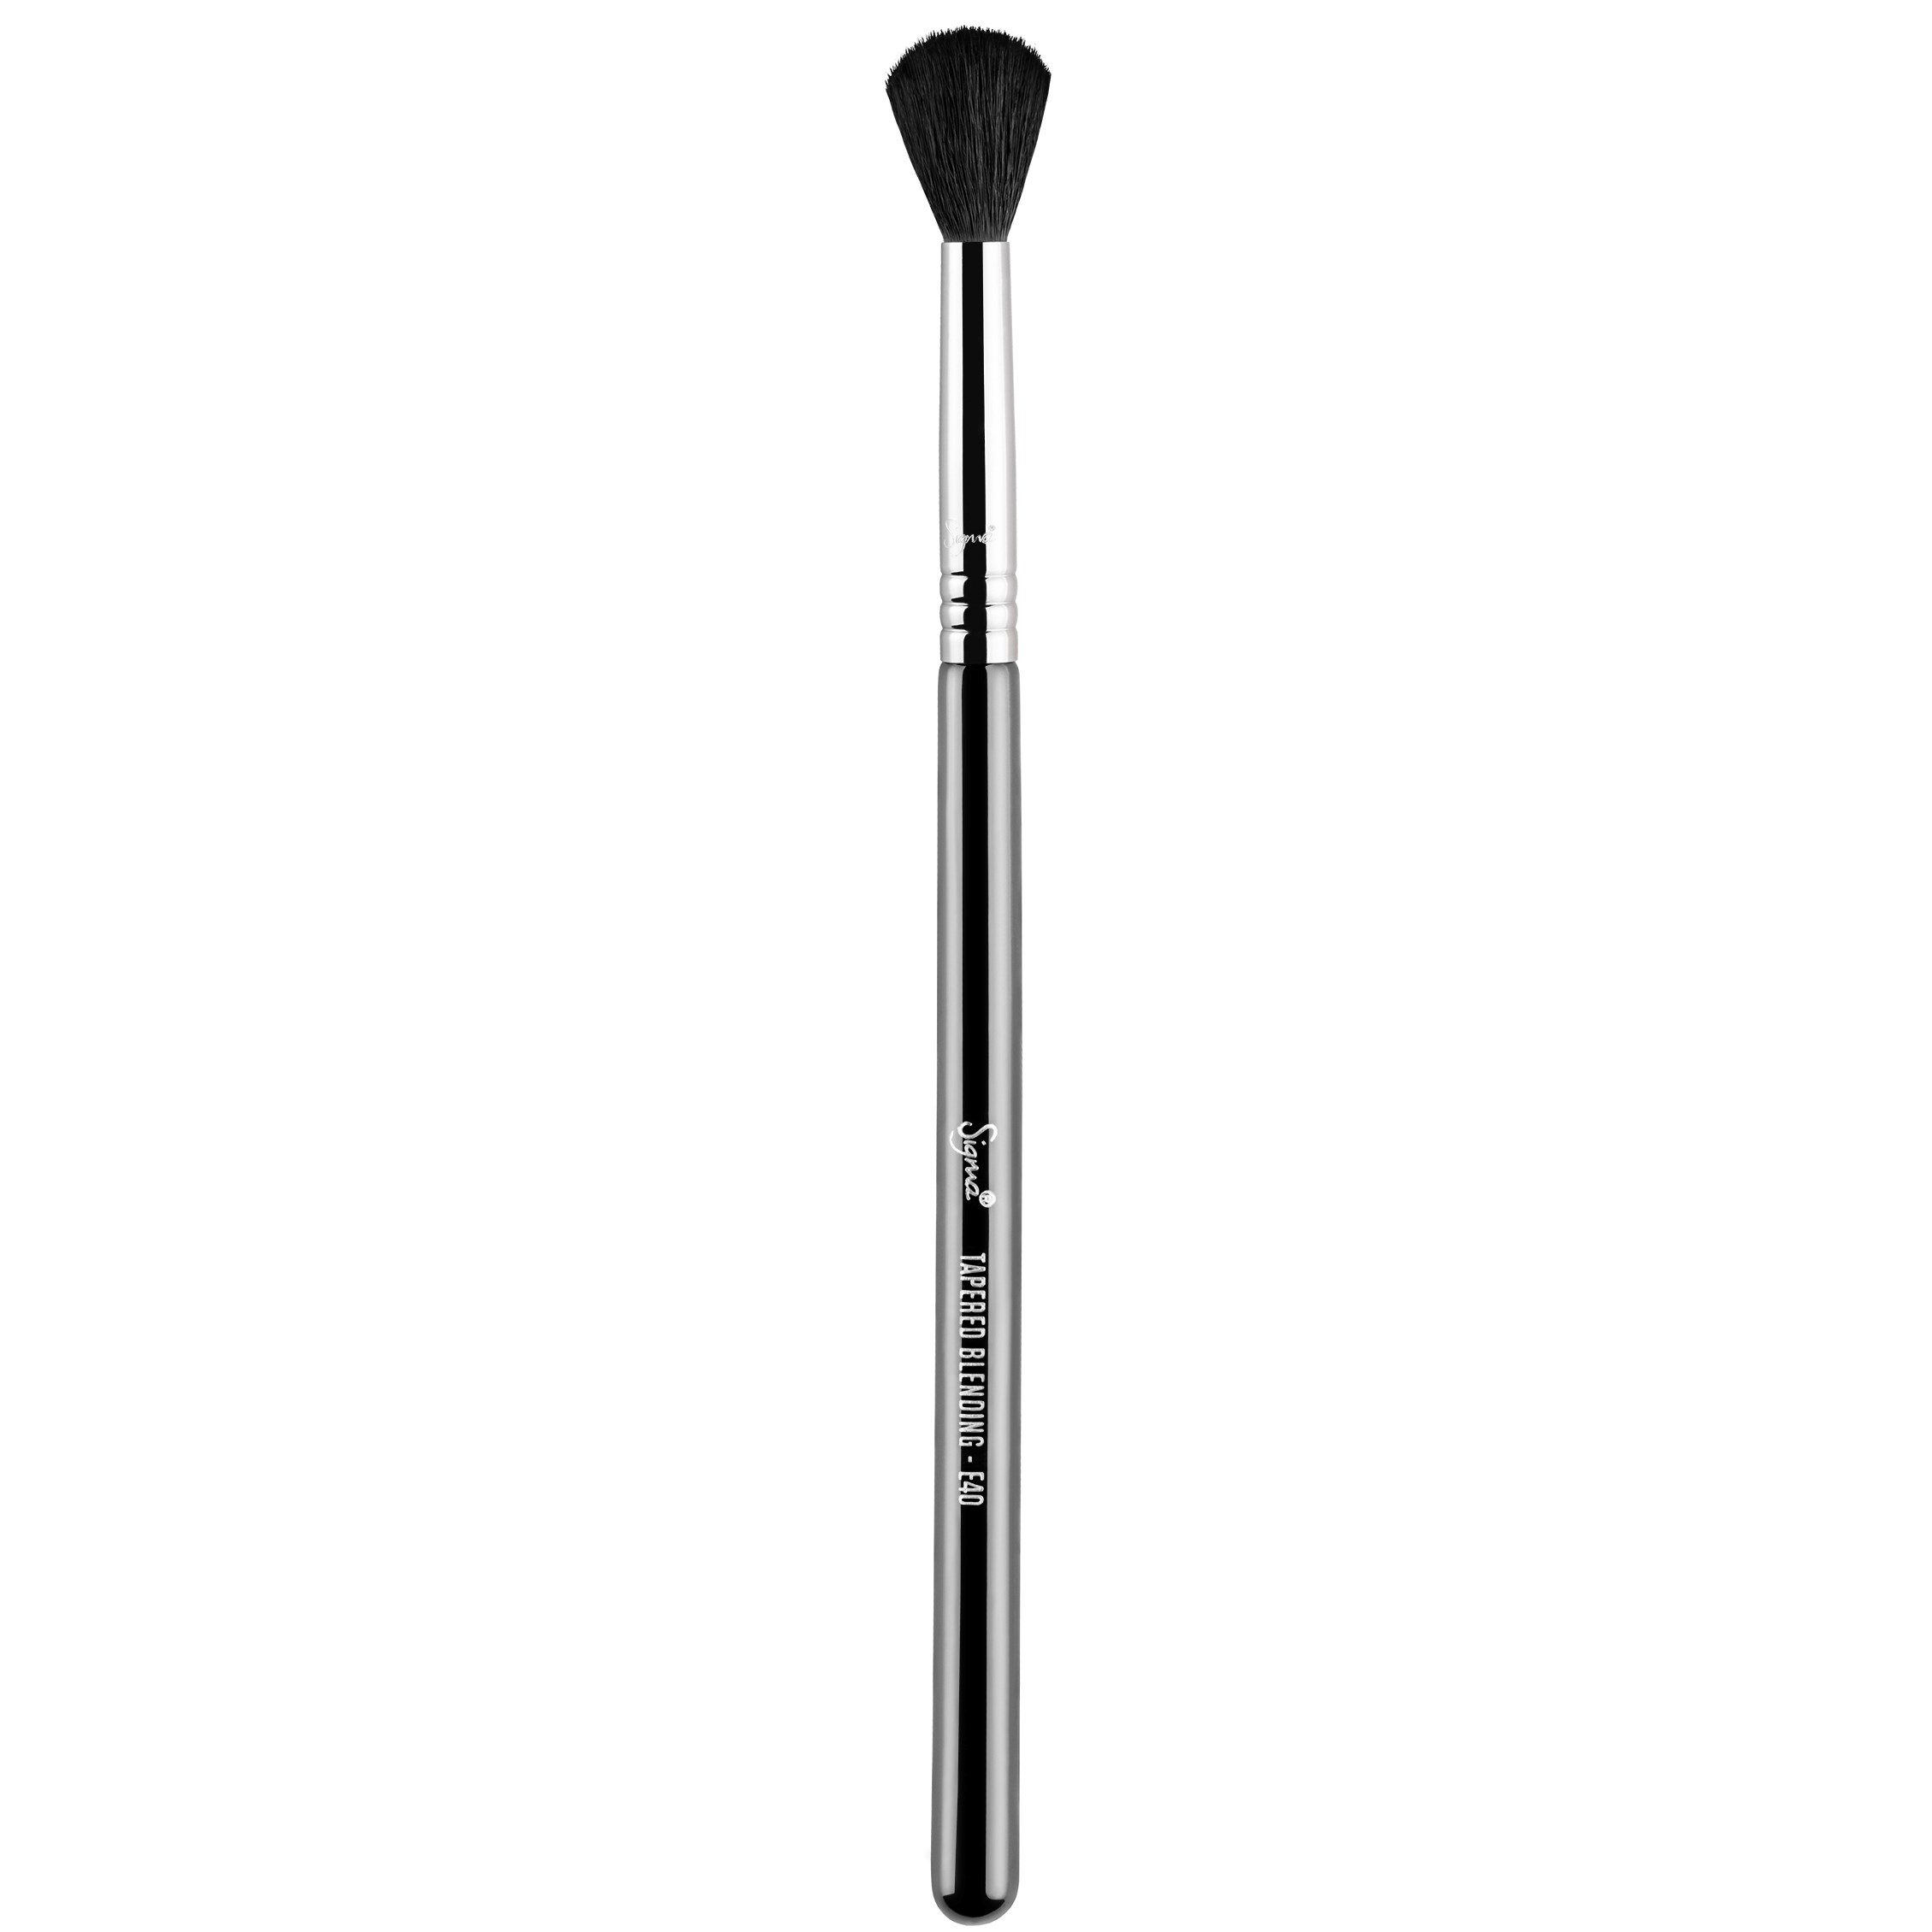 Bilde av Sigma Beauty Brushes E40 - Tapered Blending Brush